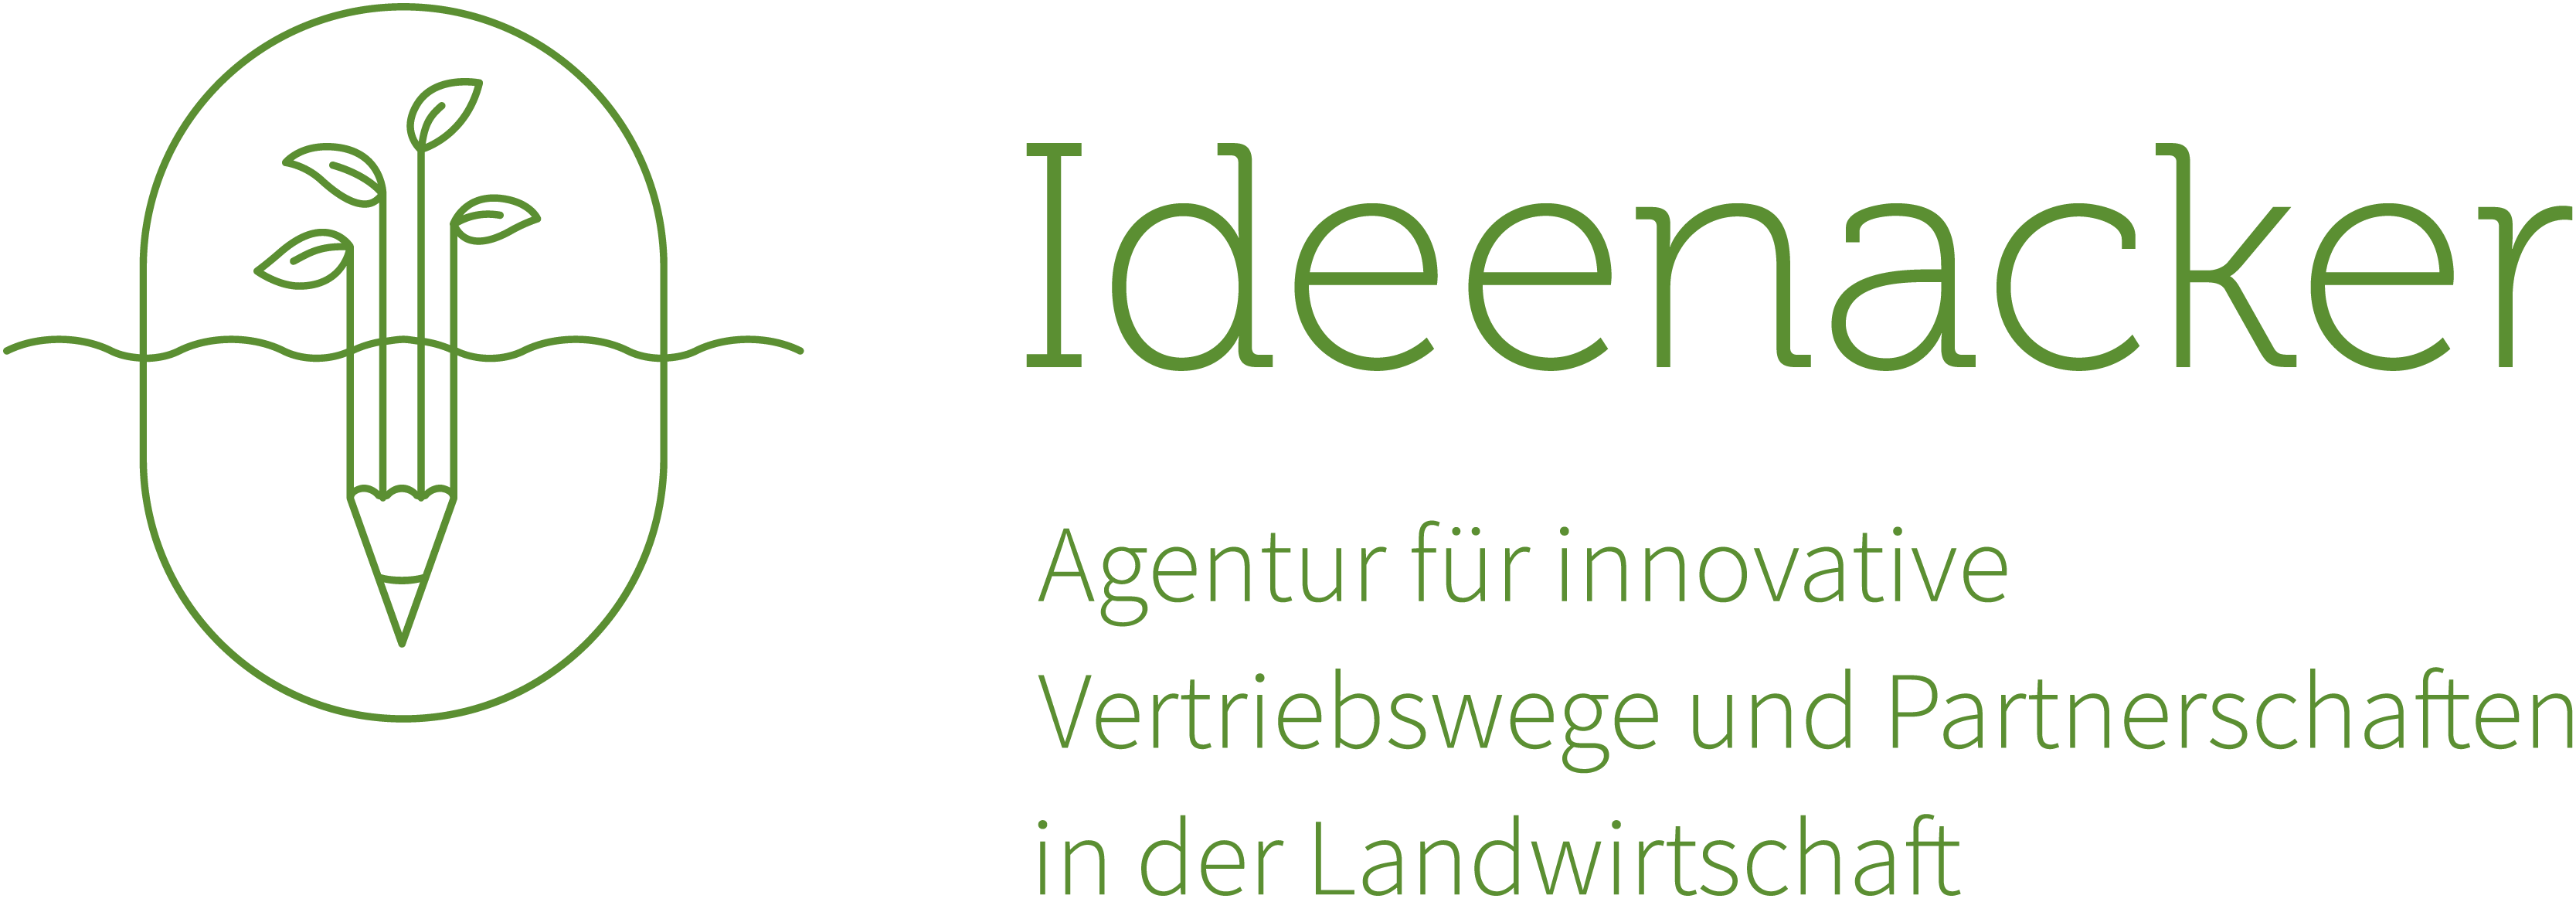 Ideenacker_Logo